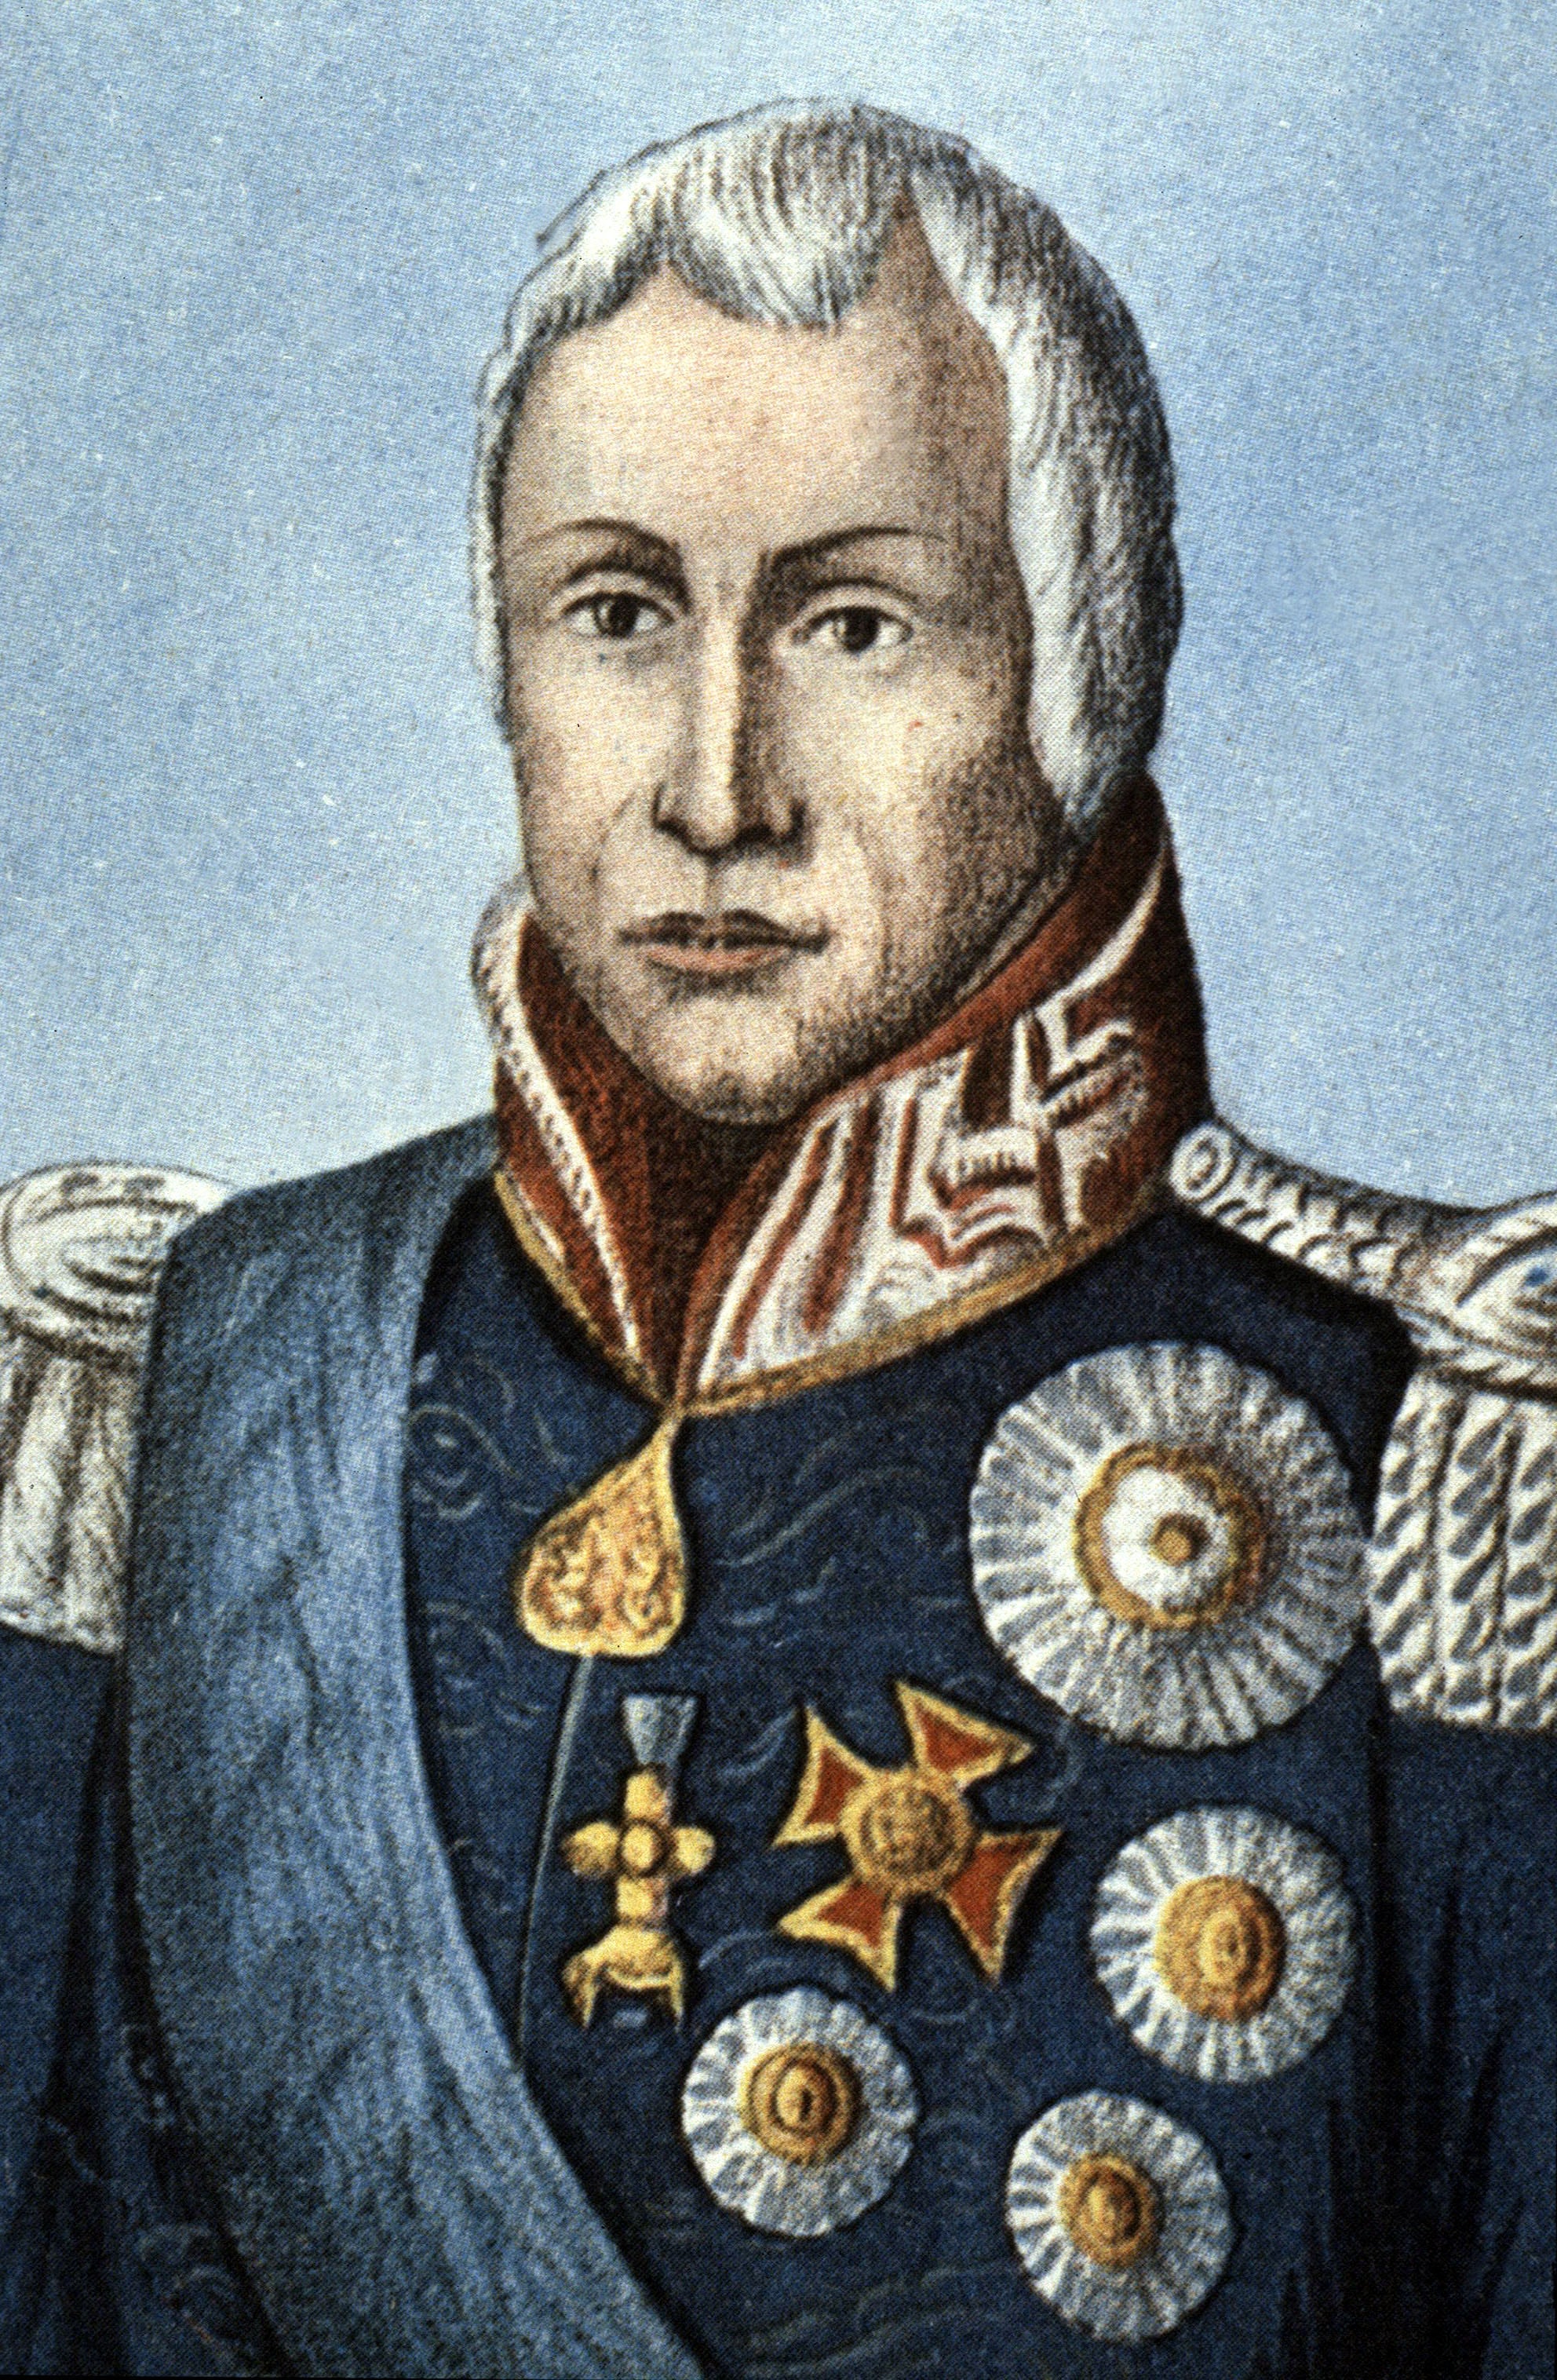 Carlo Felice, sovrano del Regno di Sardegna dal 1821, in seguito all'abdicazione del fratello Vittorio Emanuele I, fino alla morte, nel 1831. Gli succede il nipote Carlo Alberto.